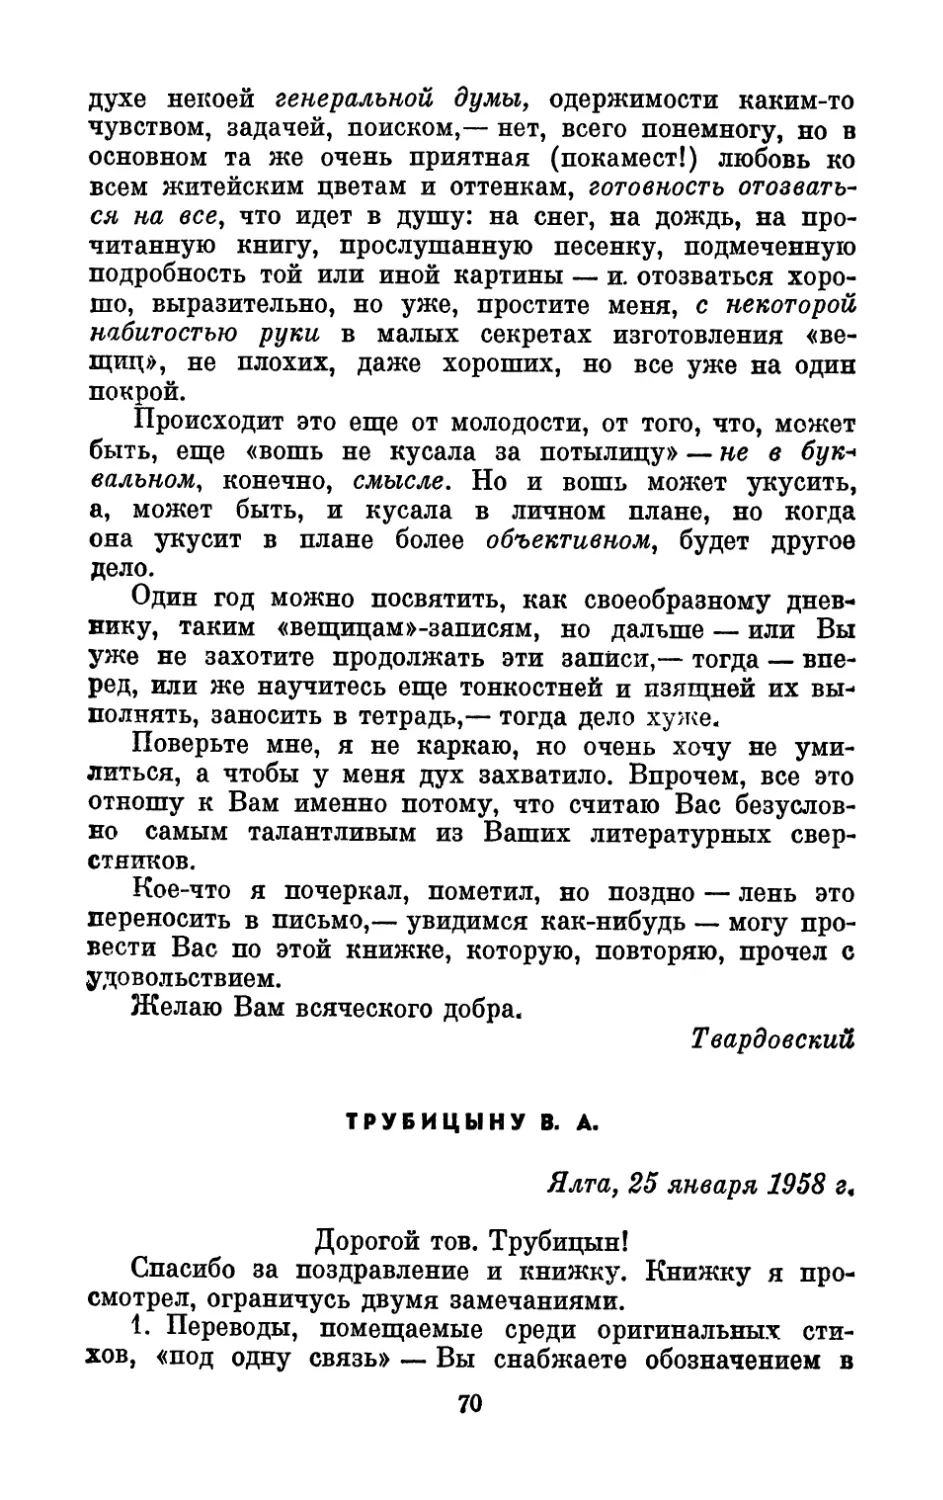 Трубицыну В. А., 25 января 1958 г.